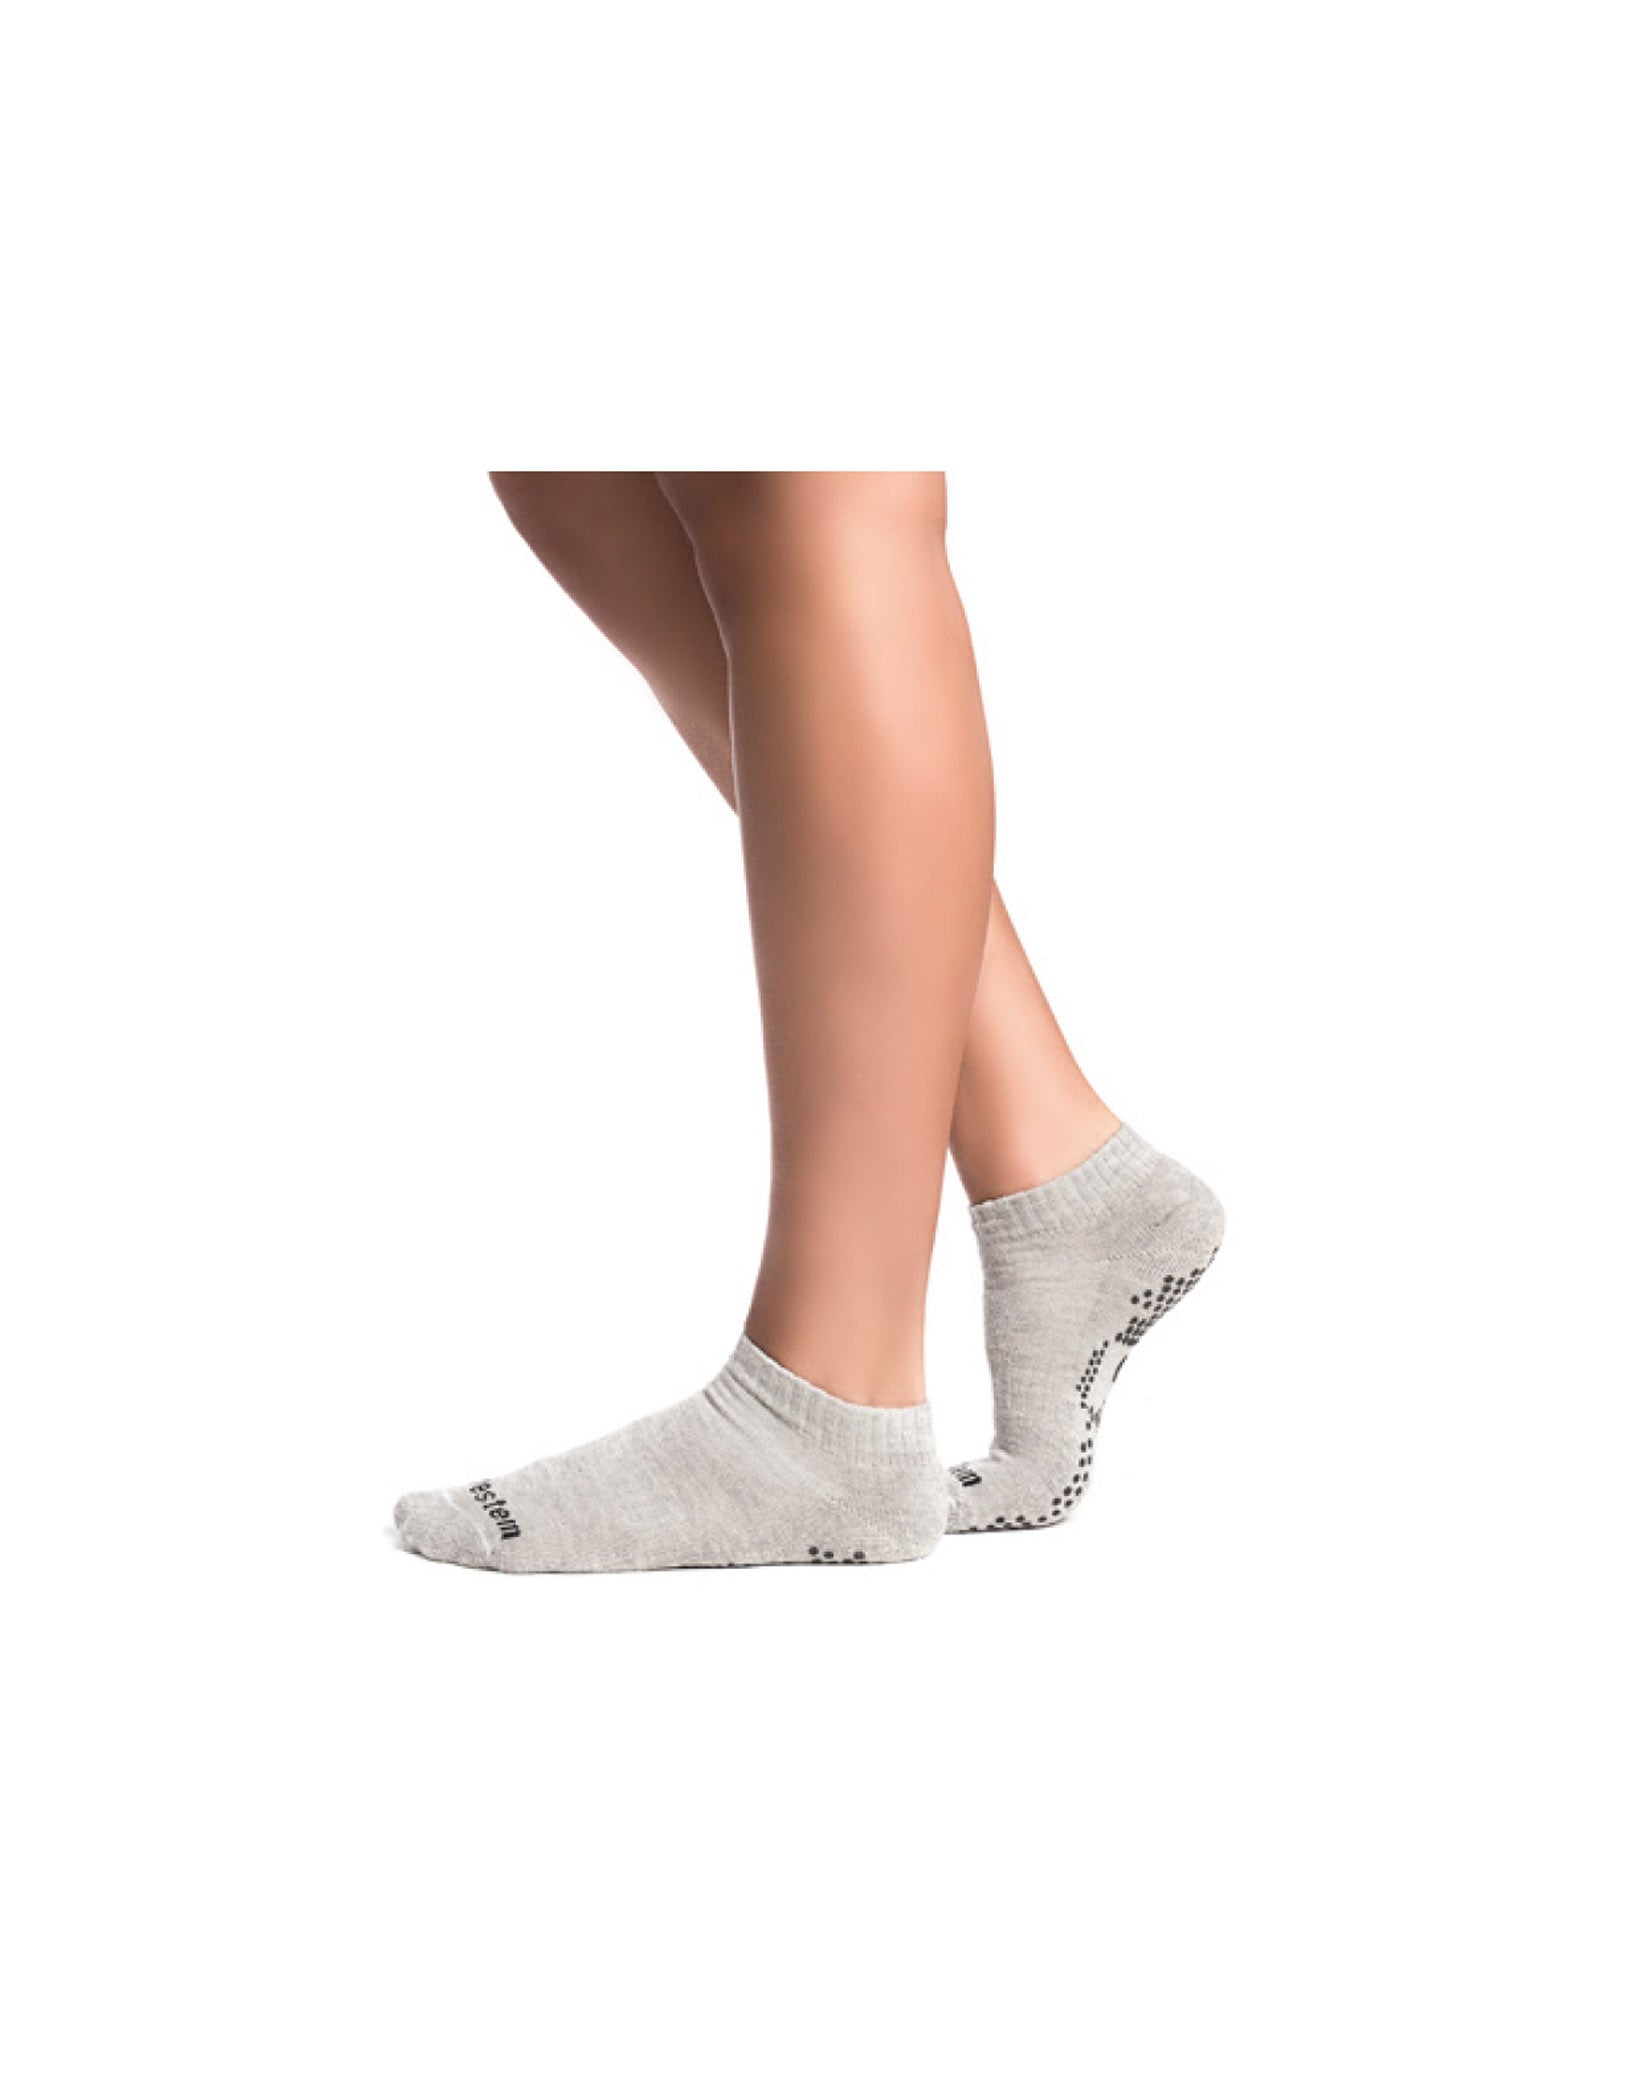 Vestem - Socks Non-slip Try Try Again Blend Light Gray - MEI08.C0013